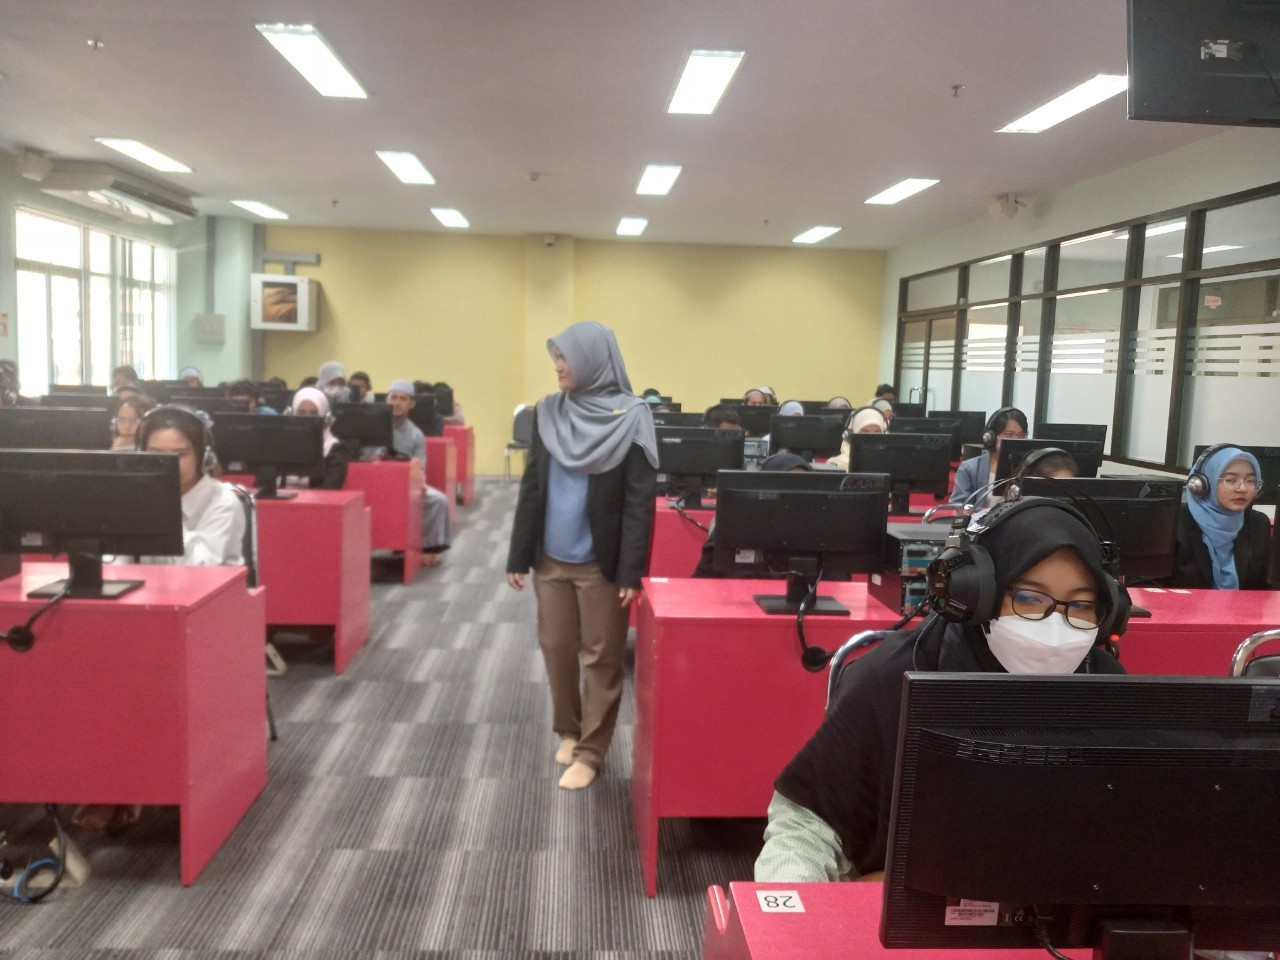 มหาวิยาลัยราชภัฏยะลา จัดสอบสัมภาษณ์และสอบข้อเขียนเพื่อคัดเลือกนักศึกษาระดับบัณฑิตศึกษา ประจำปีการศึกษา 2567